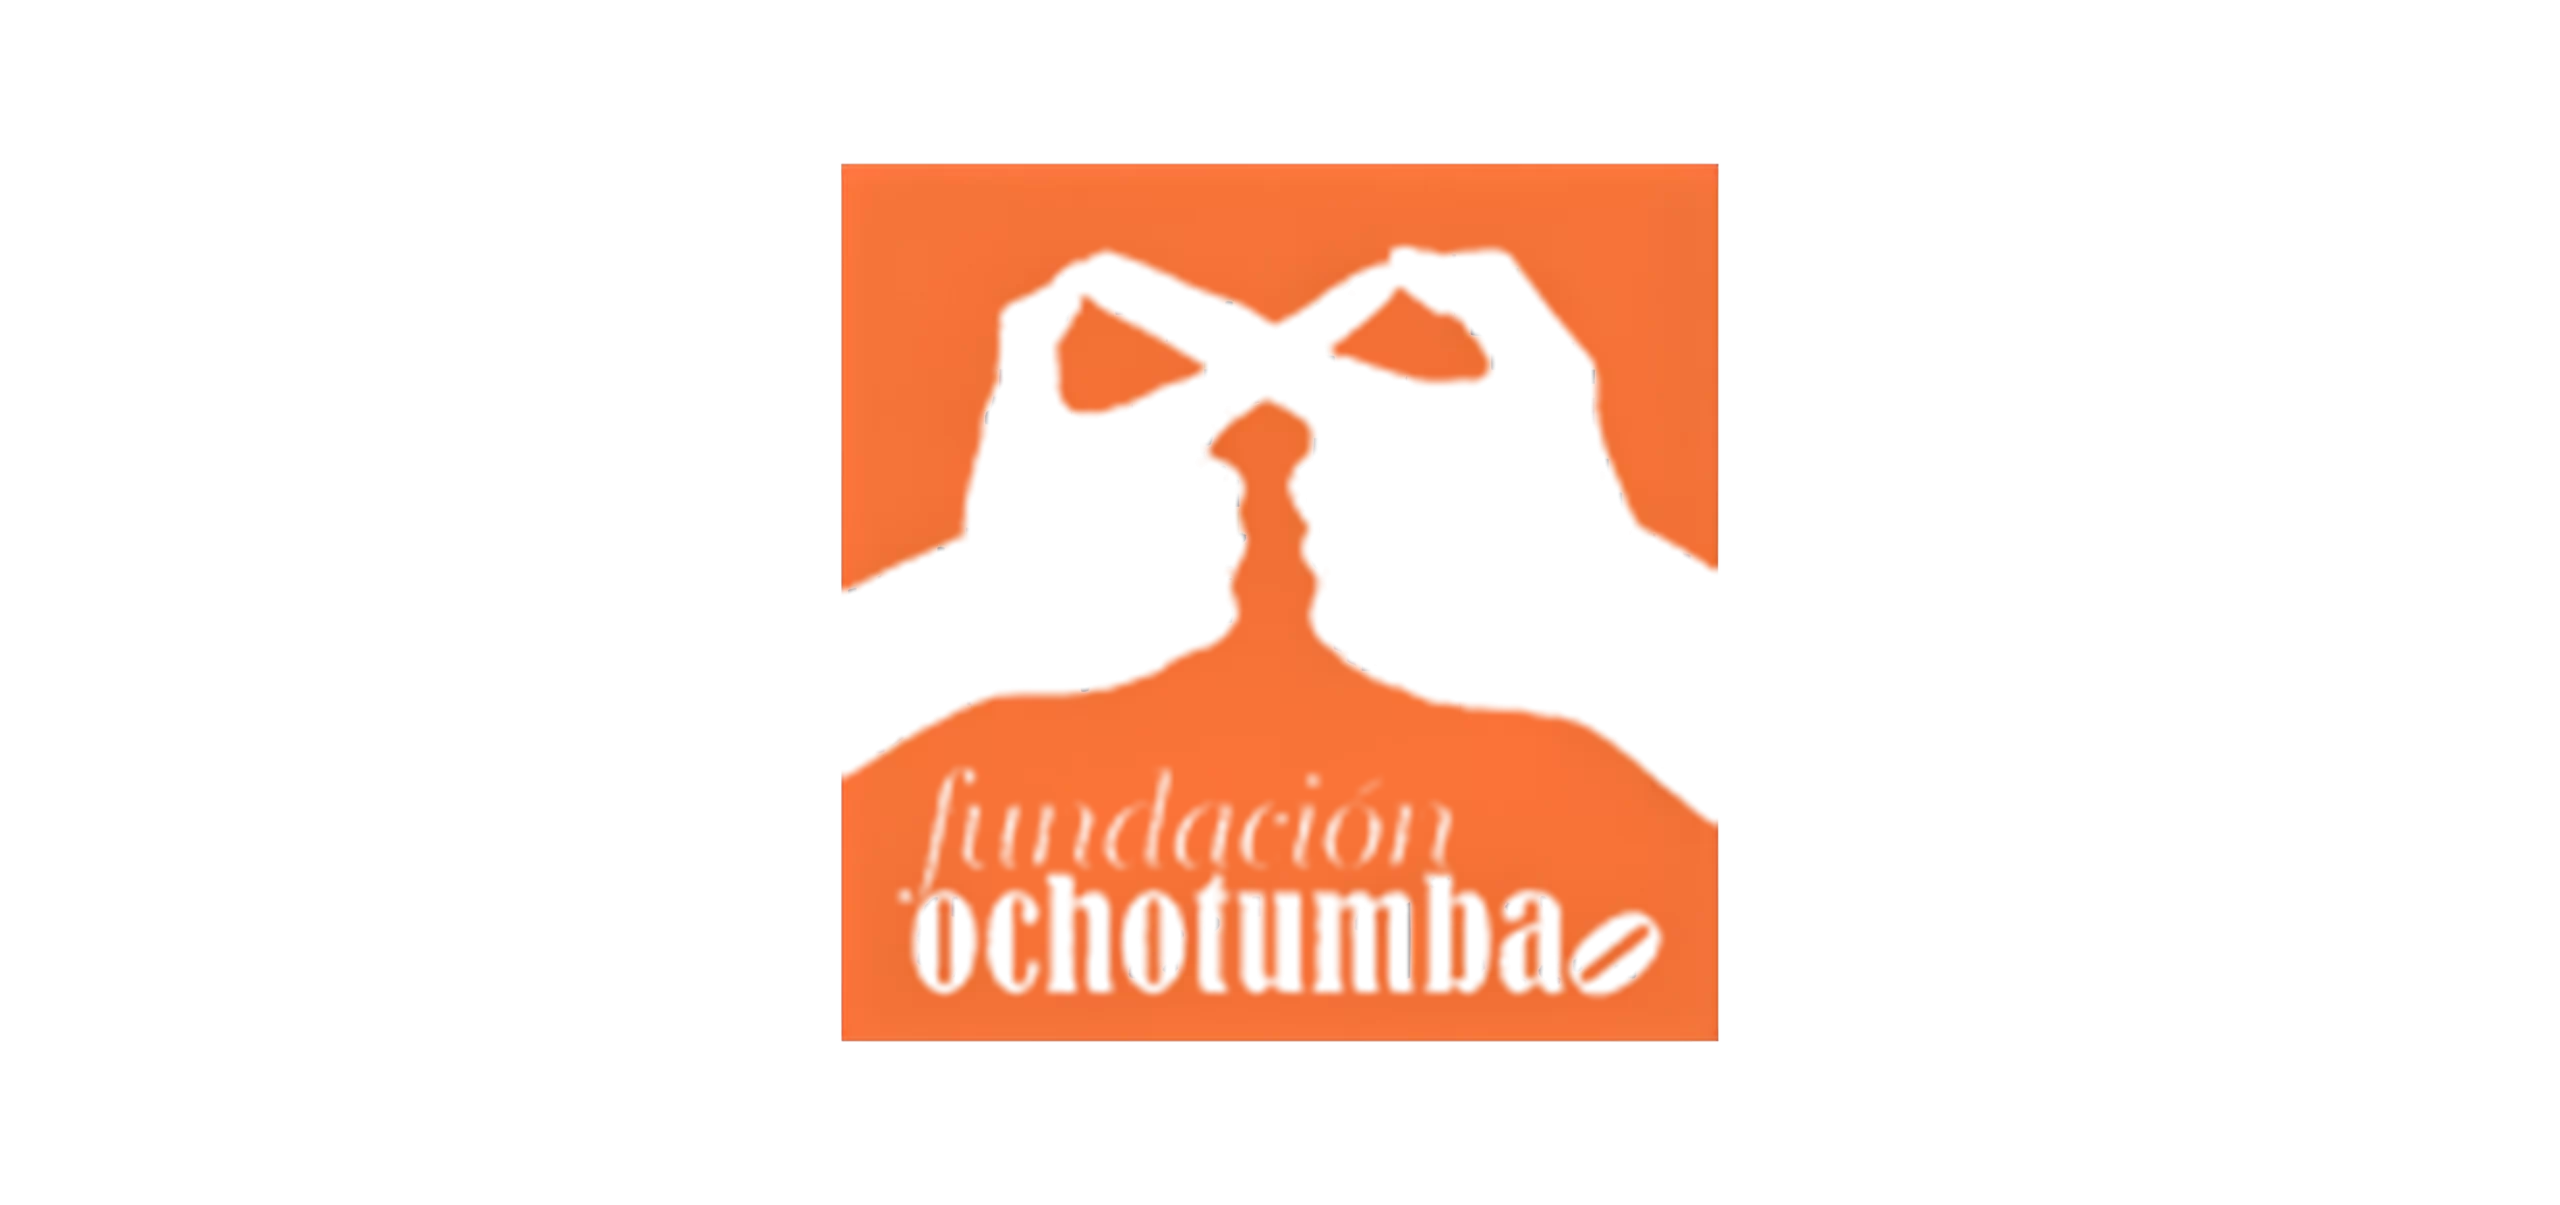 Logo de la fundación "Ochotumbao"